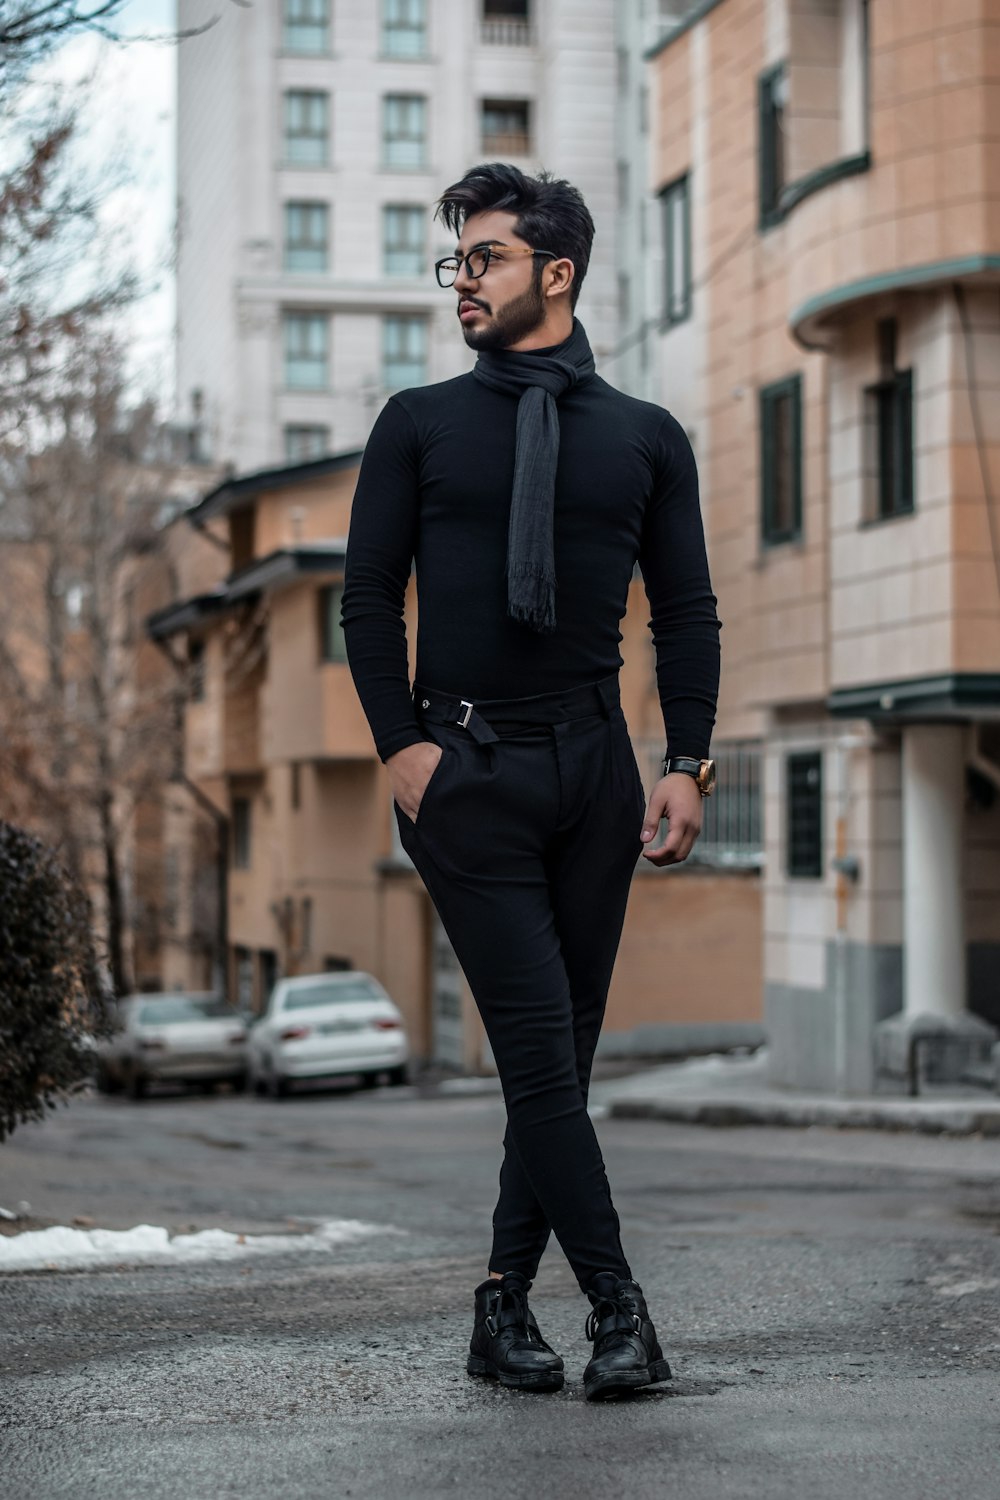 Mann in schwarzem Hemd, Krawatte und Hose auf der Straße